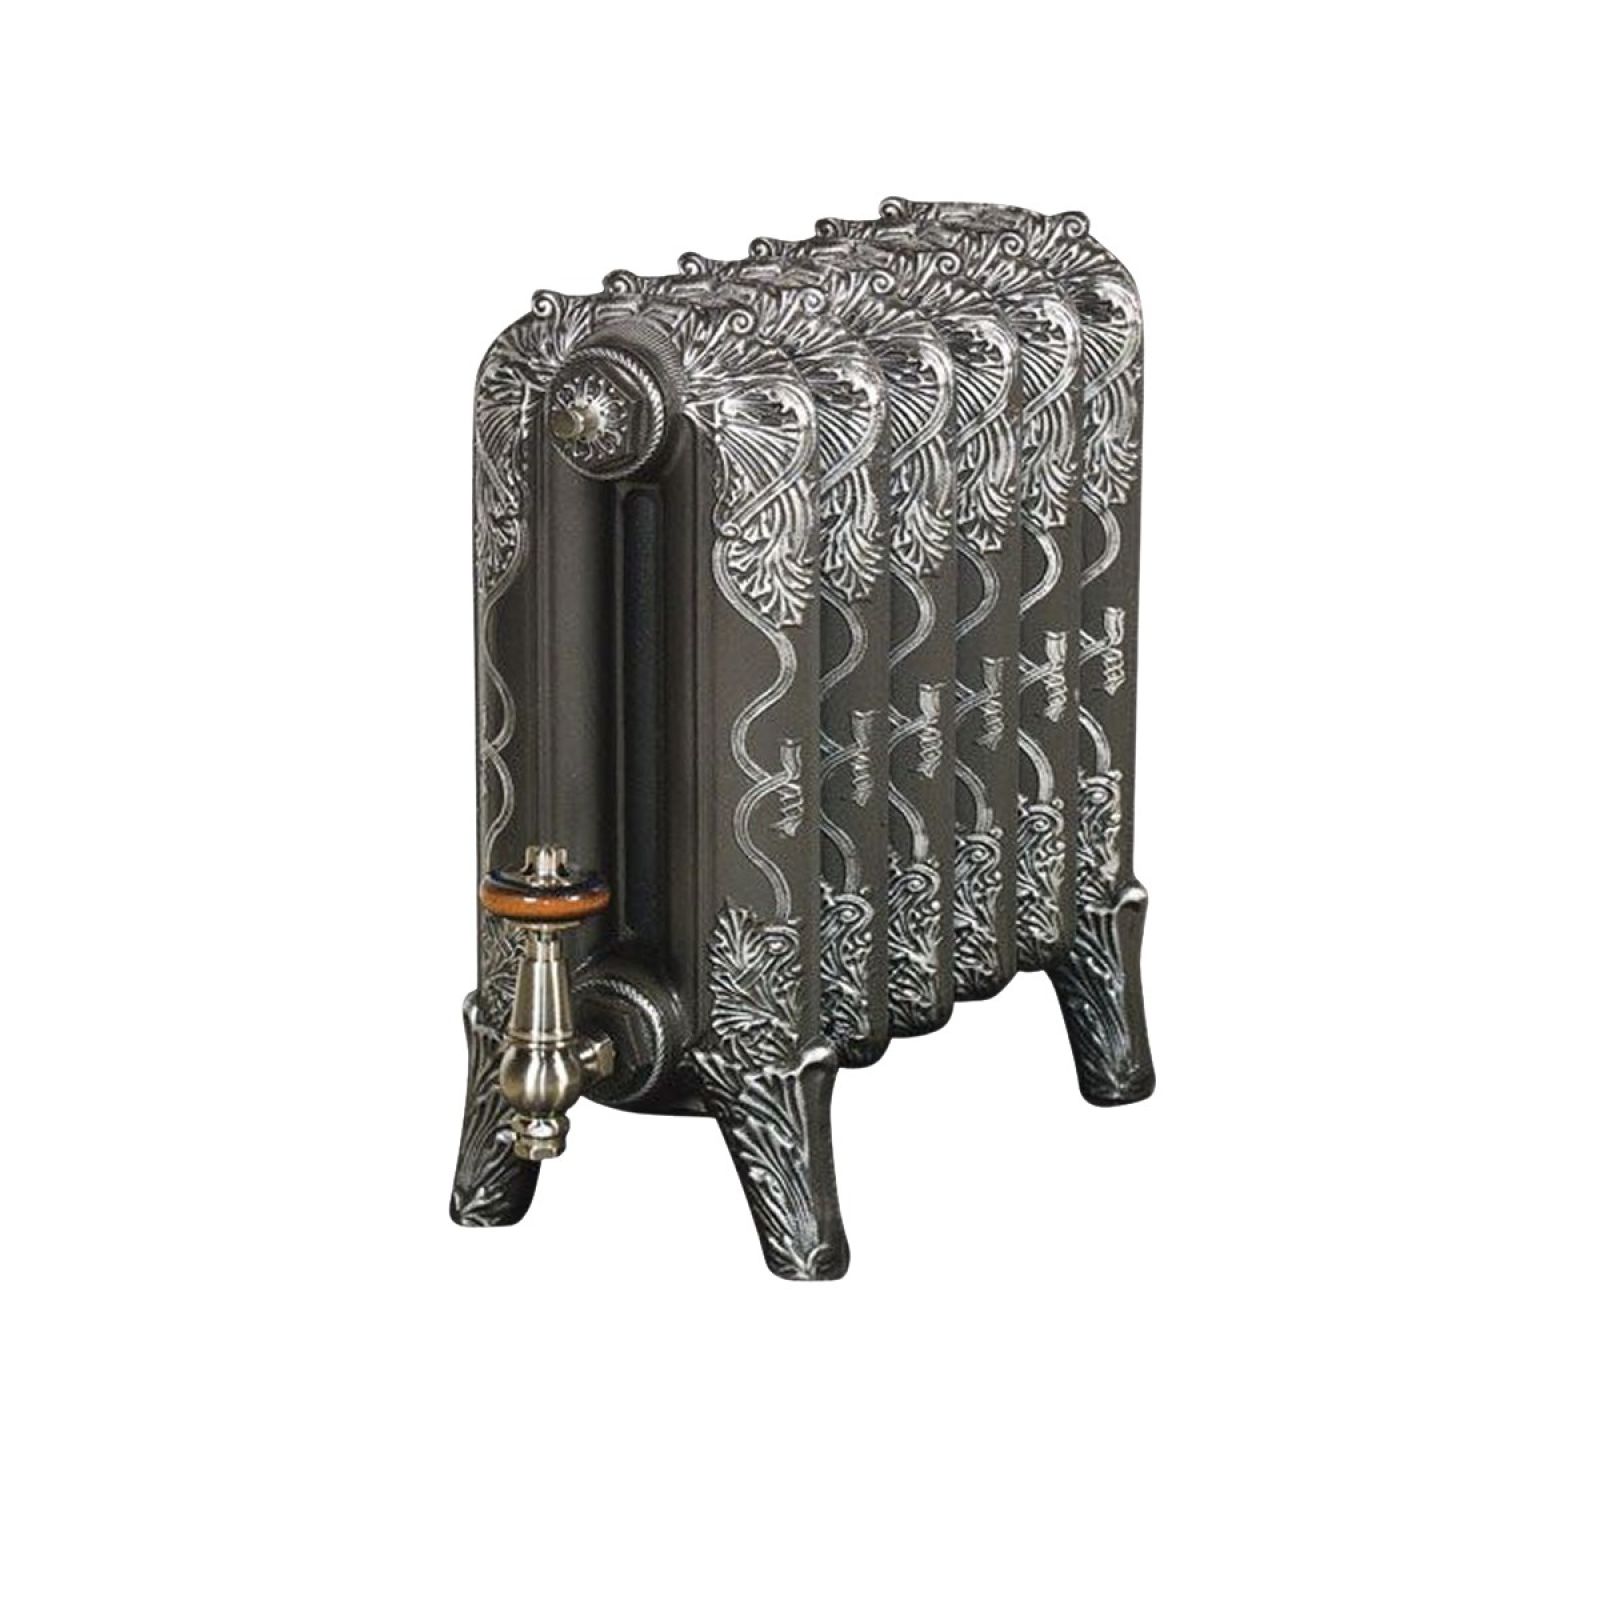 Trafalgar radiator 460mm high